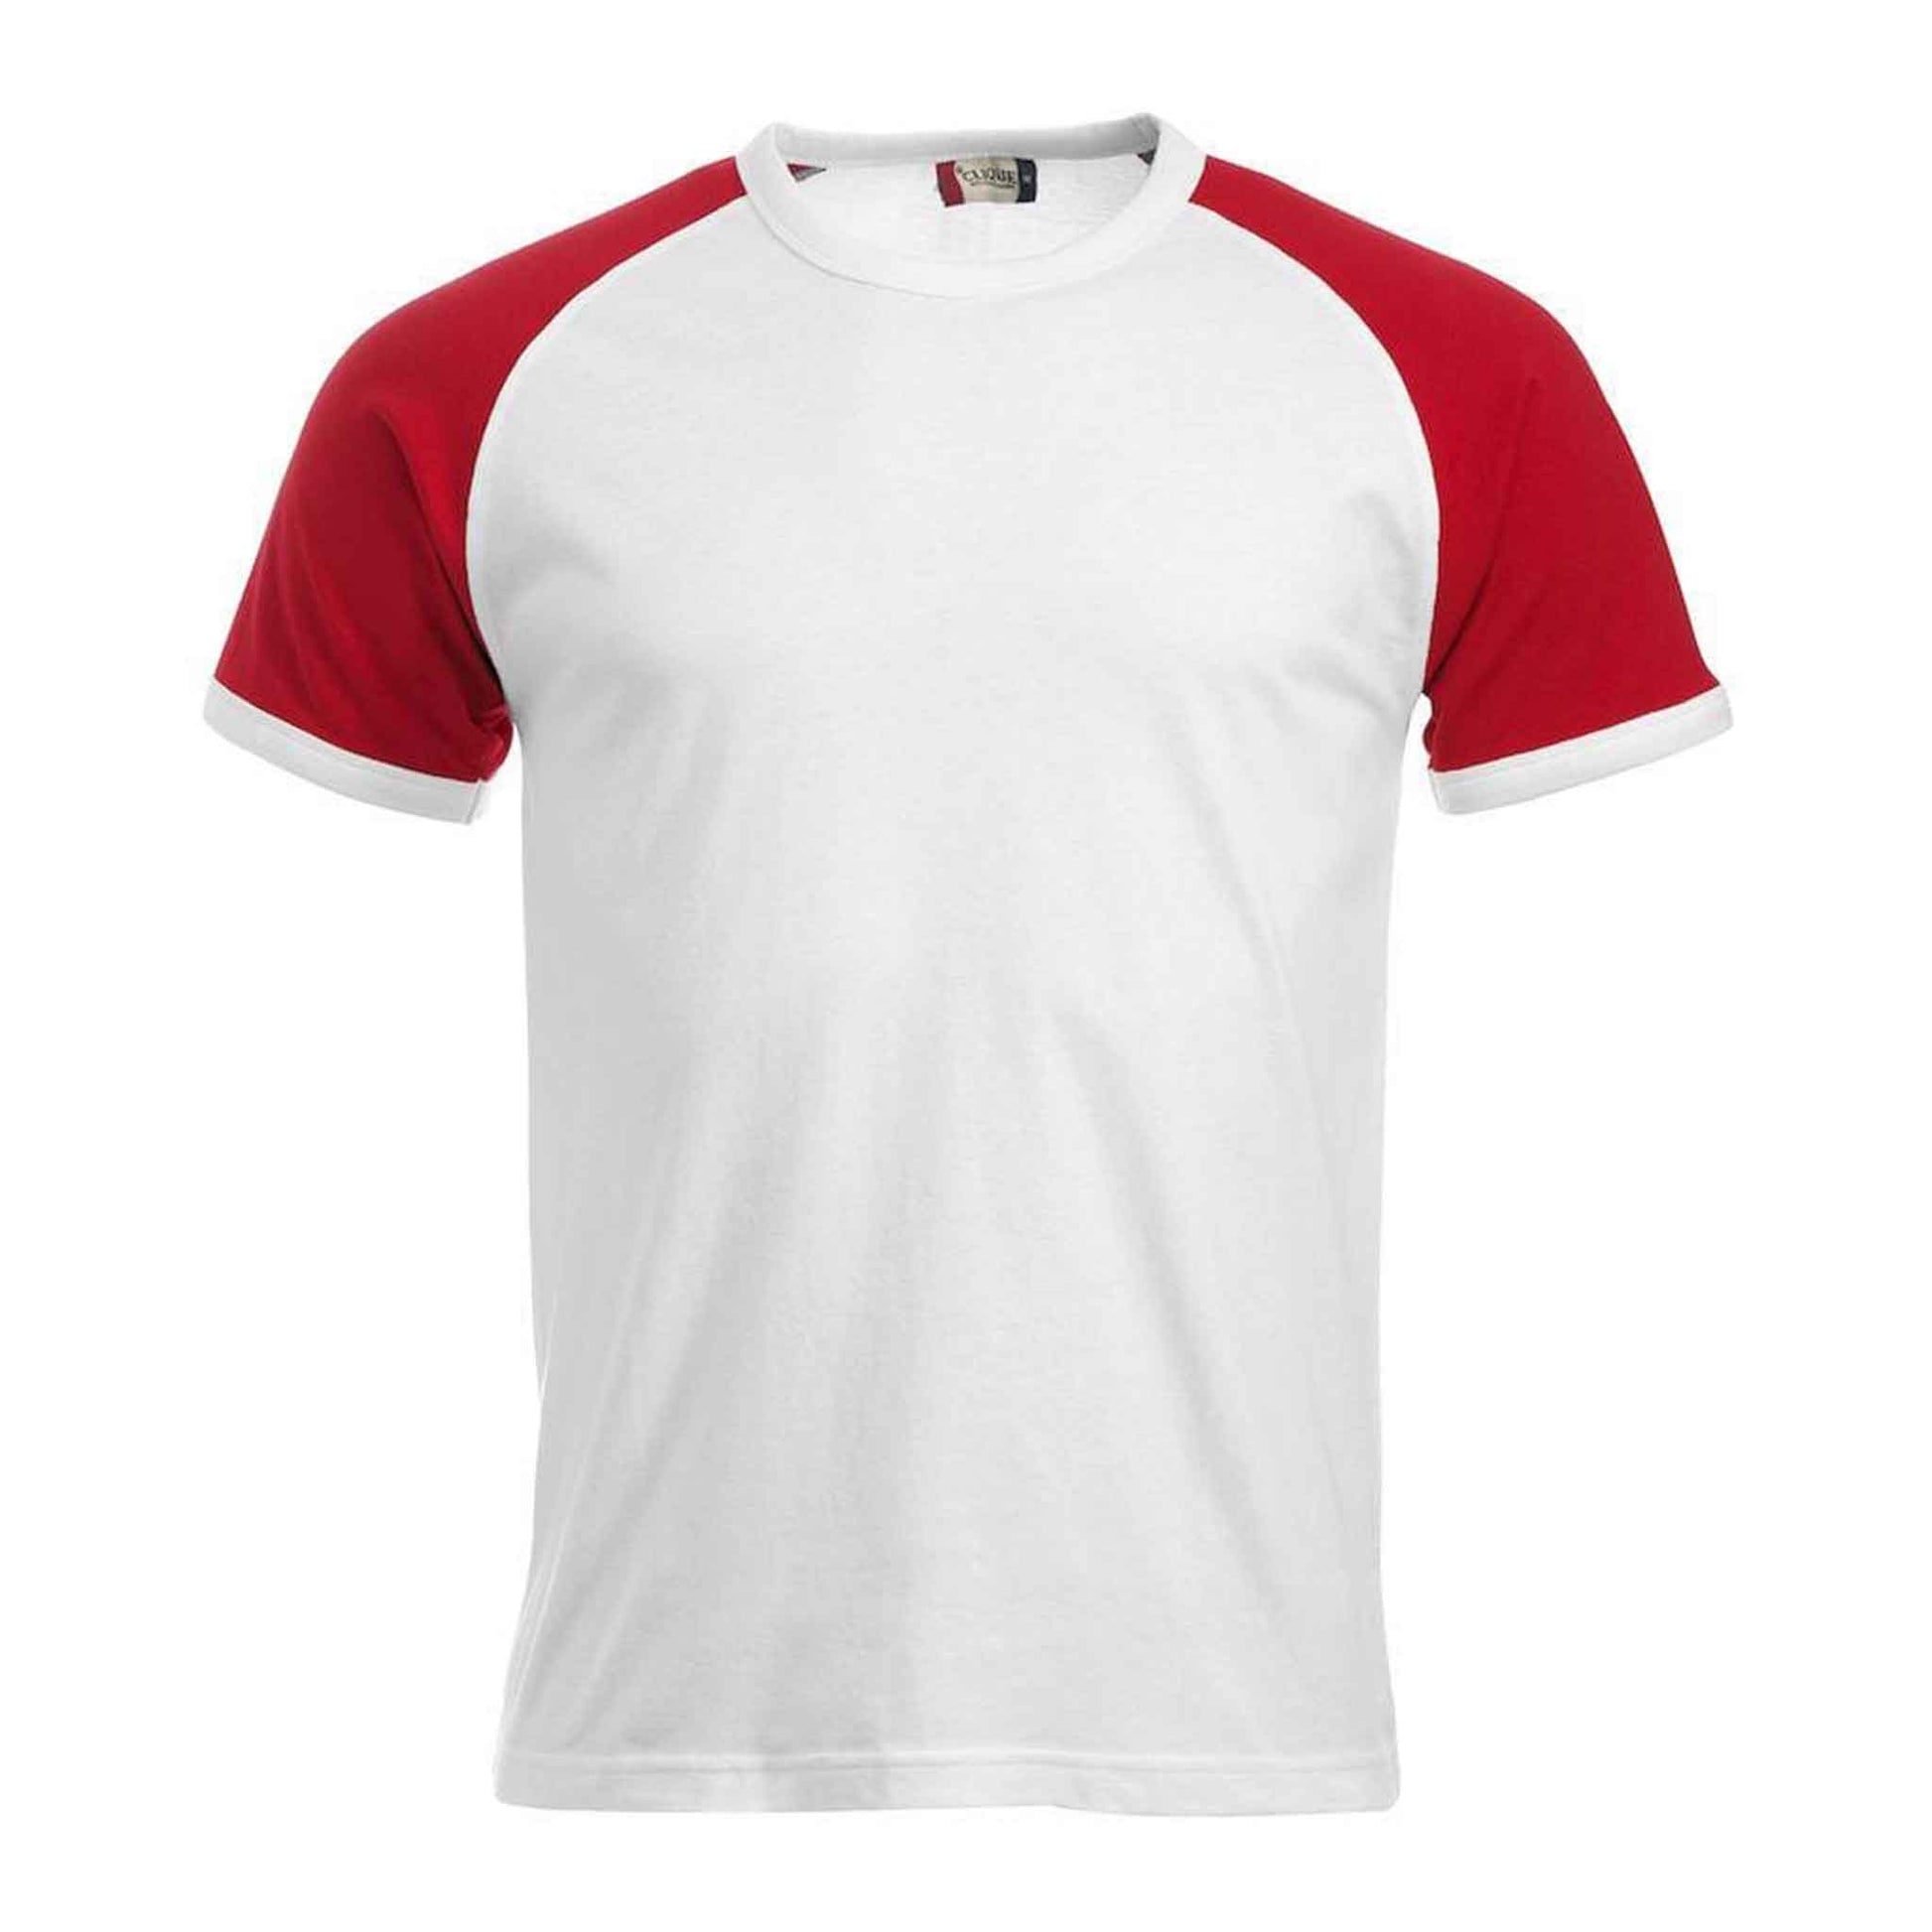 CLIQUE  Unisex T-Shirt Raglanärmel in Kontrastfarbe